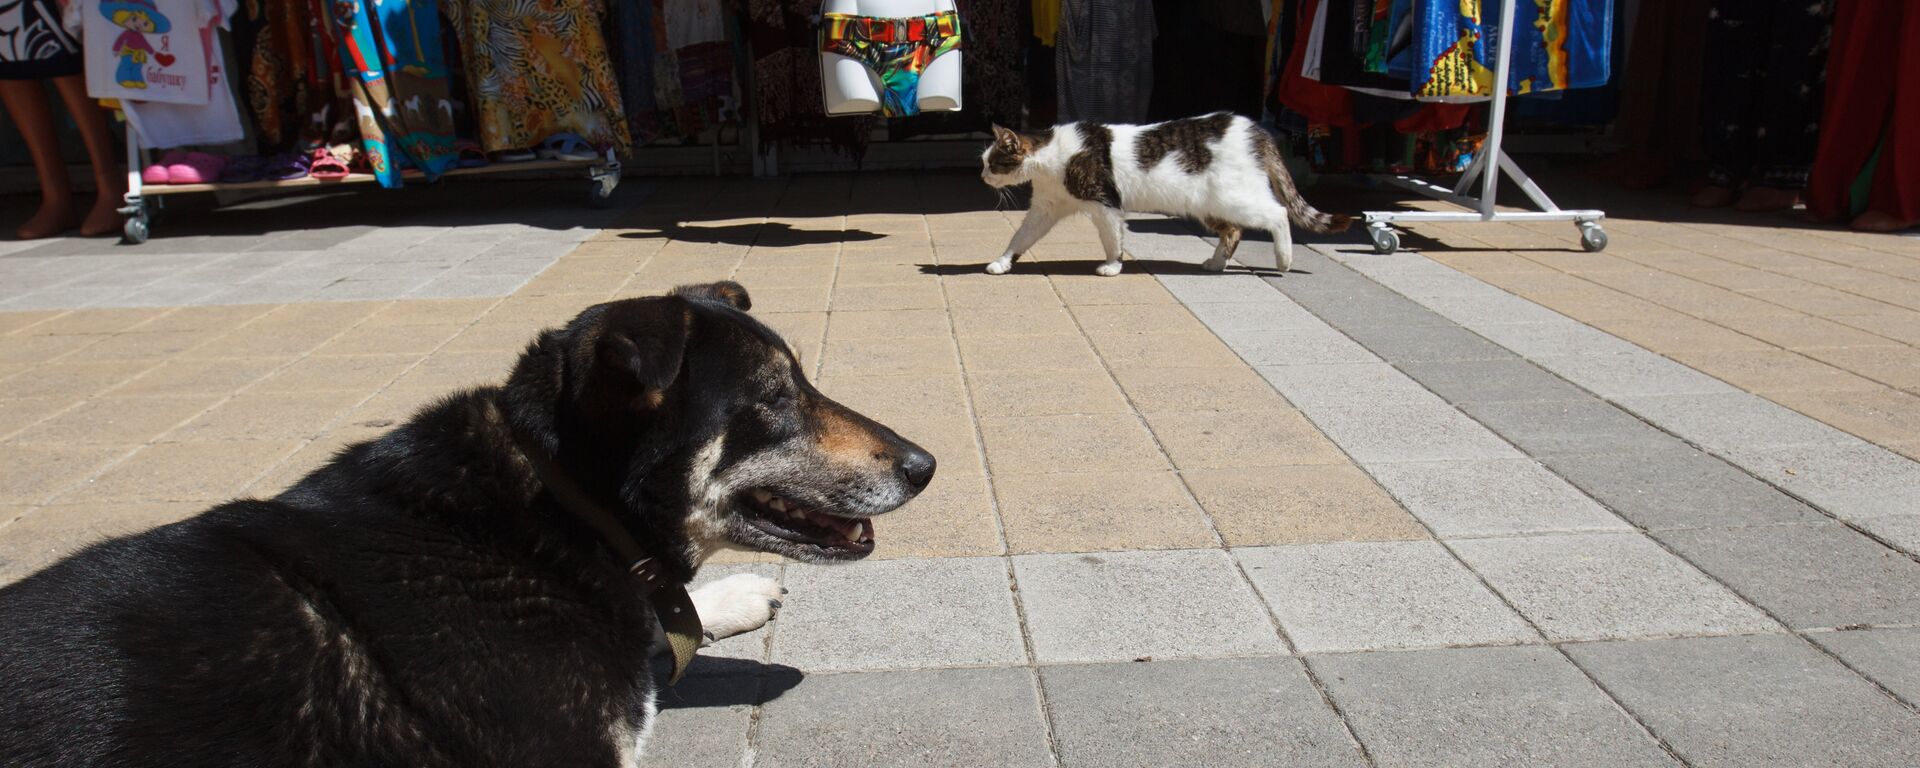 Собака и кошка на набережной в Сочи - Sputnik Аҧсны, 1920, 19.05.2020